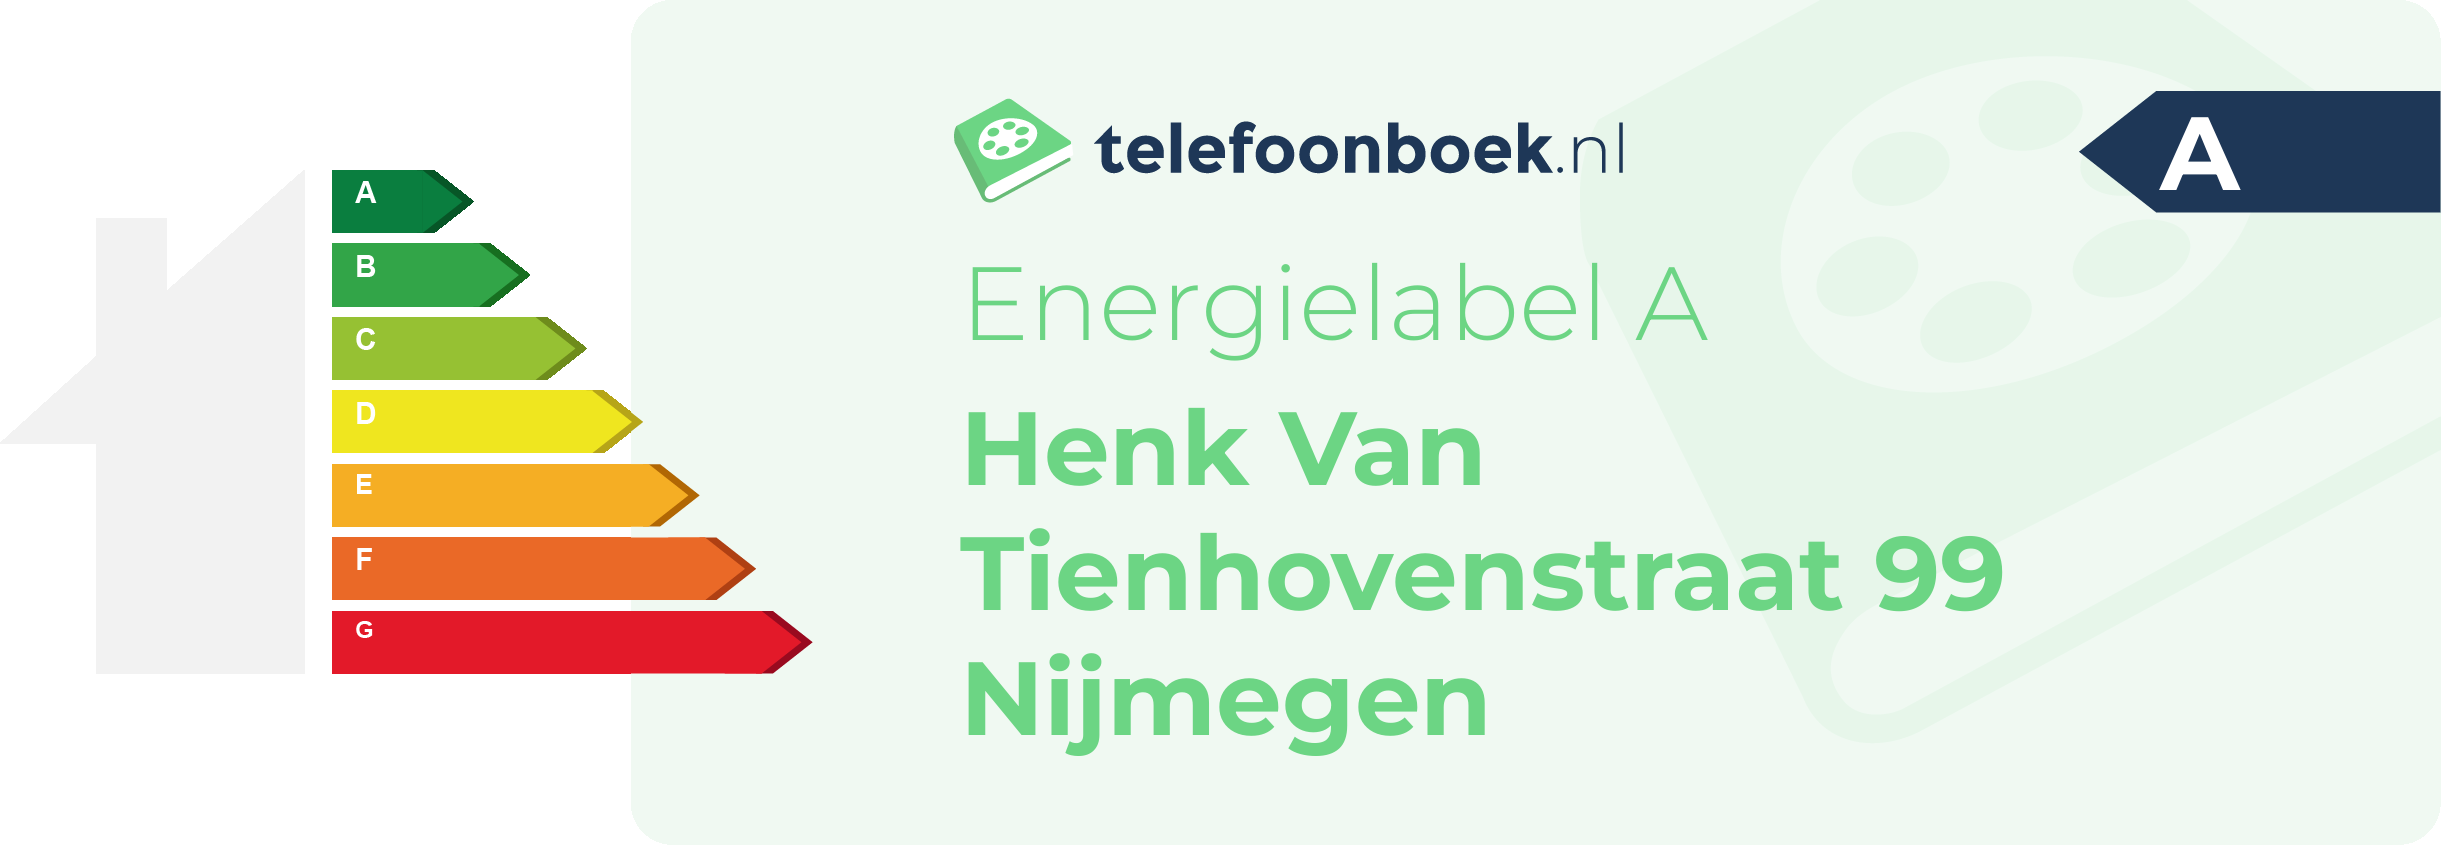 Energielabel Henk Van Tienhovenstraat 99 Nijmegen